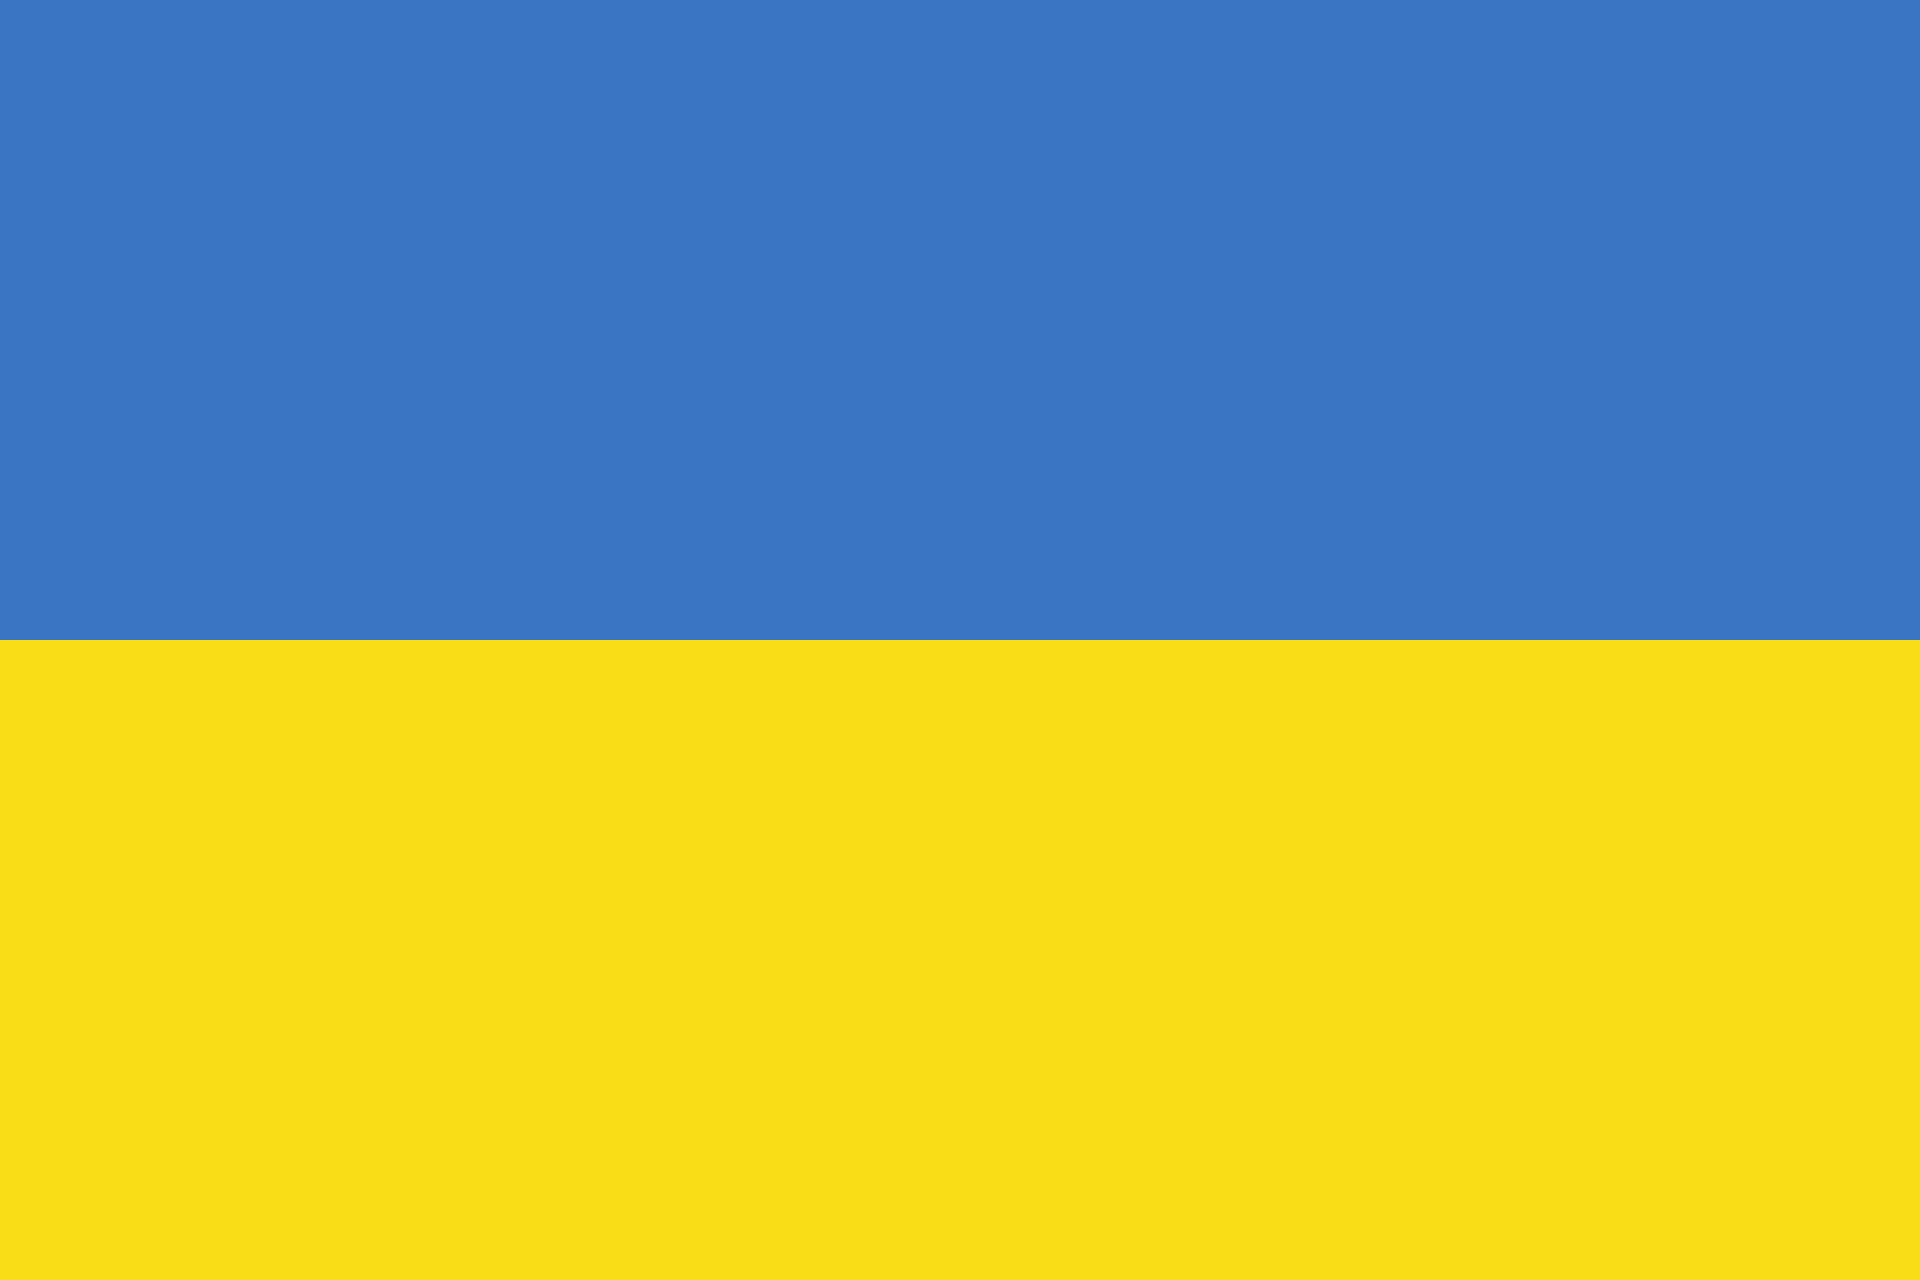 ukraineflag